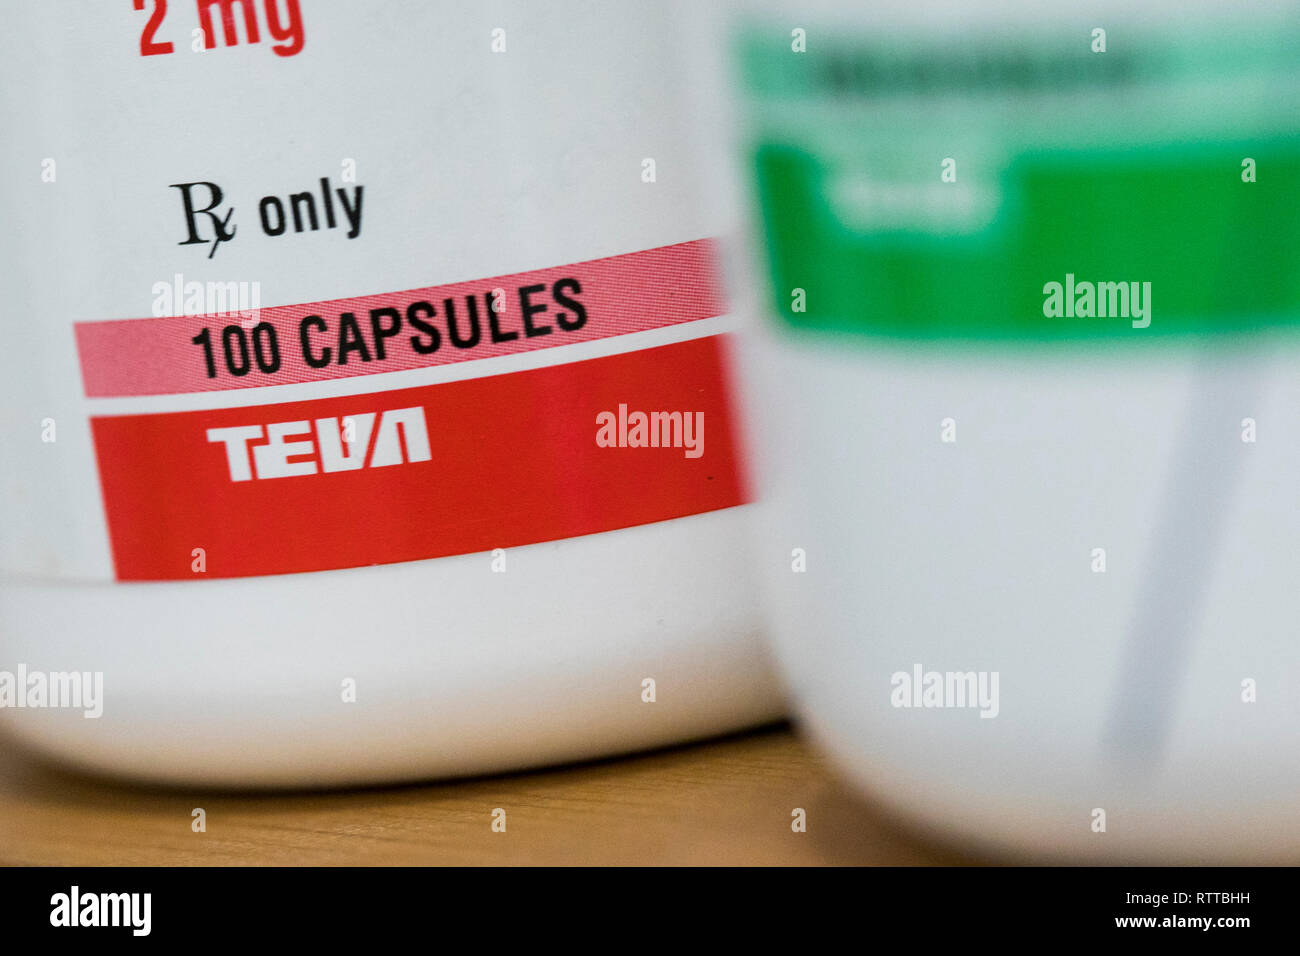 Teva Pharmaceutical Industries un logo est visible sur l'emballage de produits pharmaceutiques sur ordonnance photographié dans une pharmacie Banque D'Images